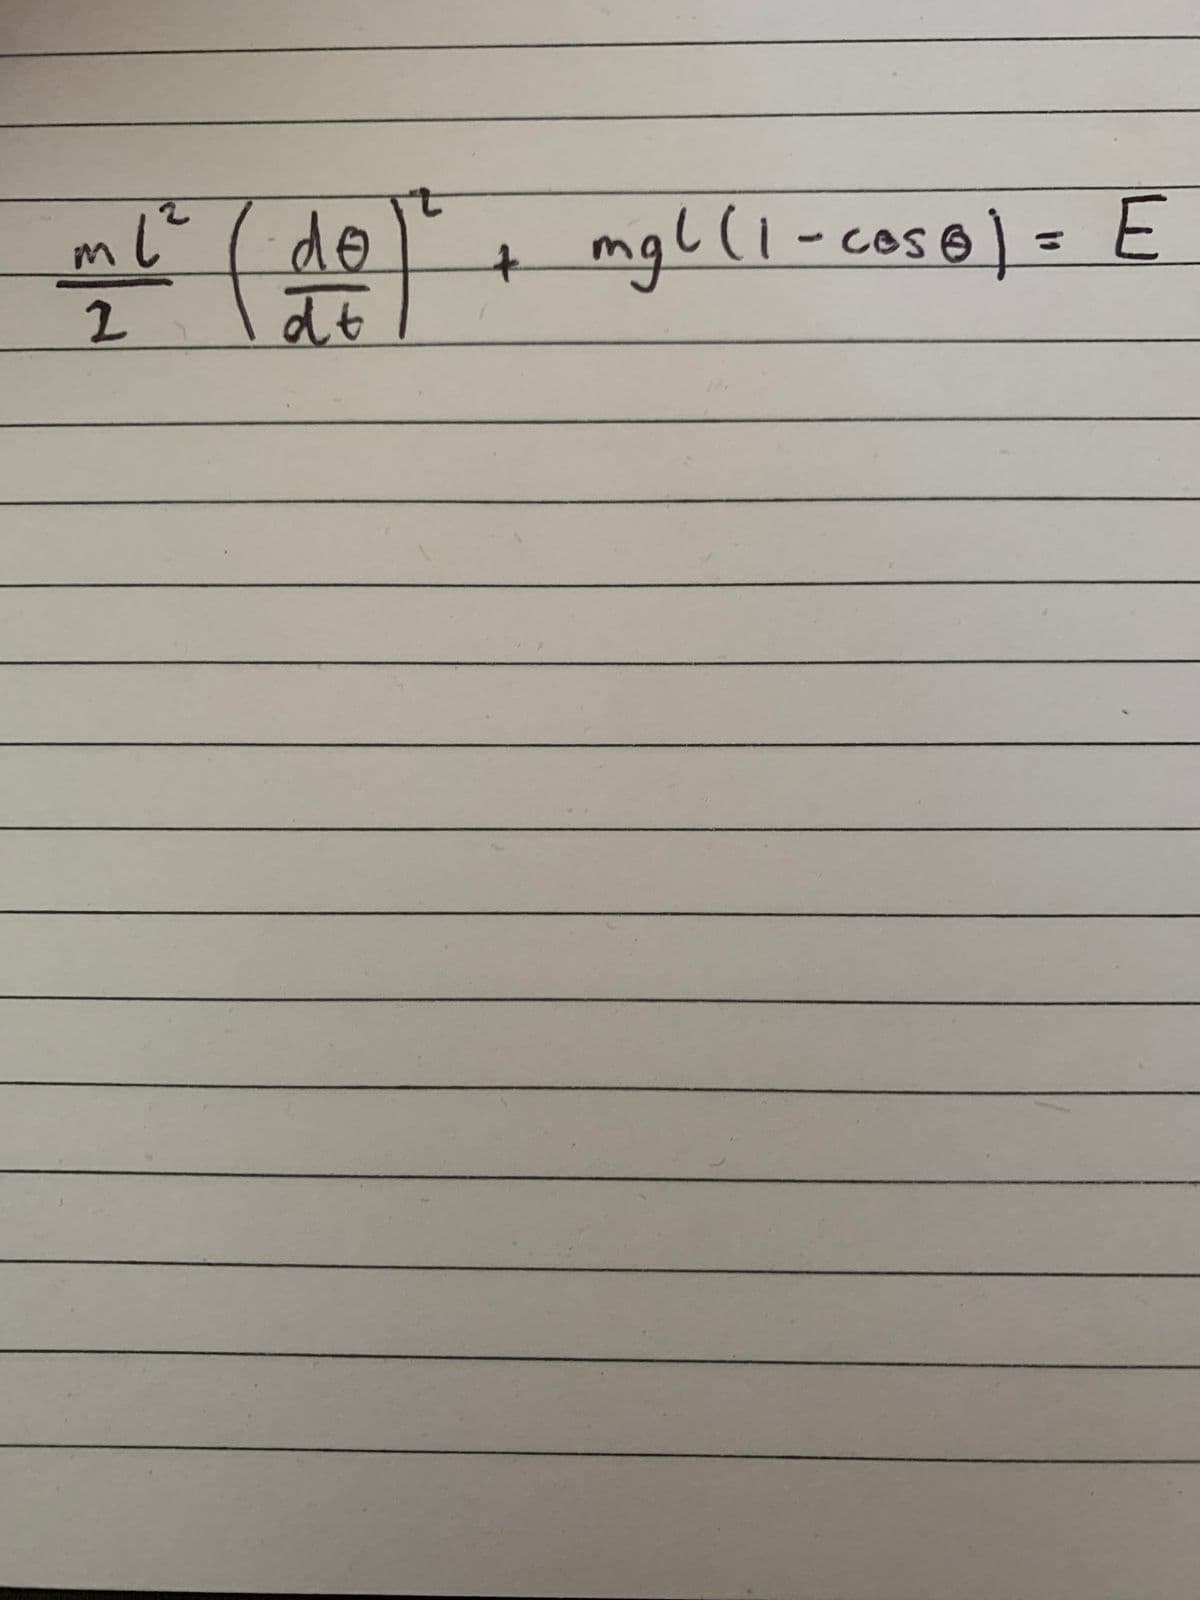 ml" ( de
mgl(1-coso) = E
Ces
